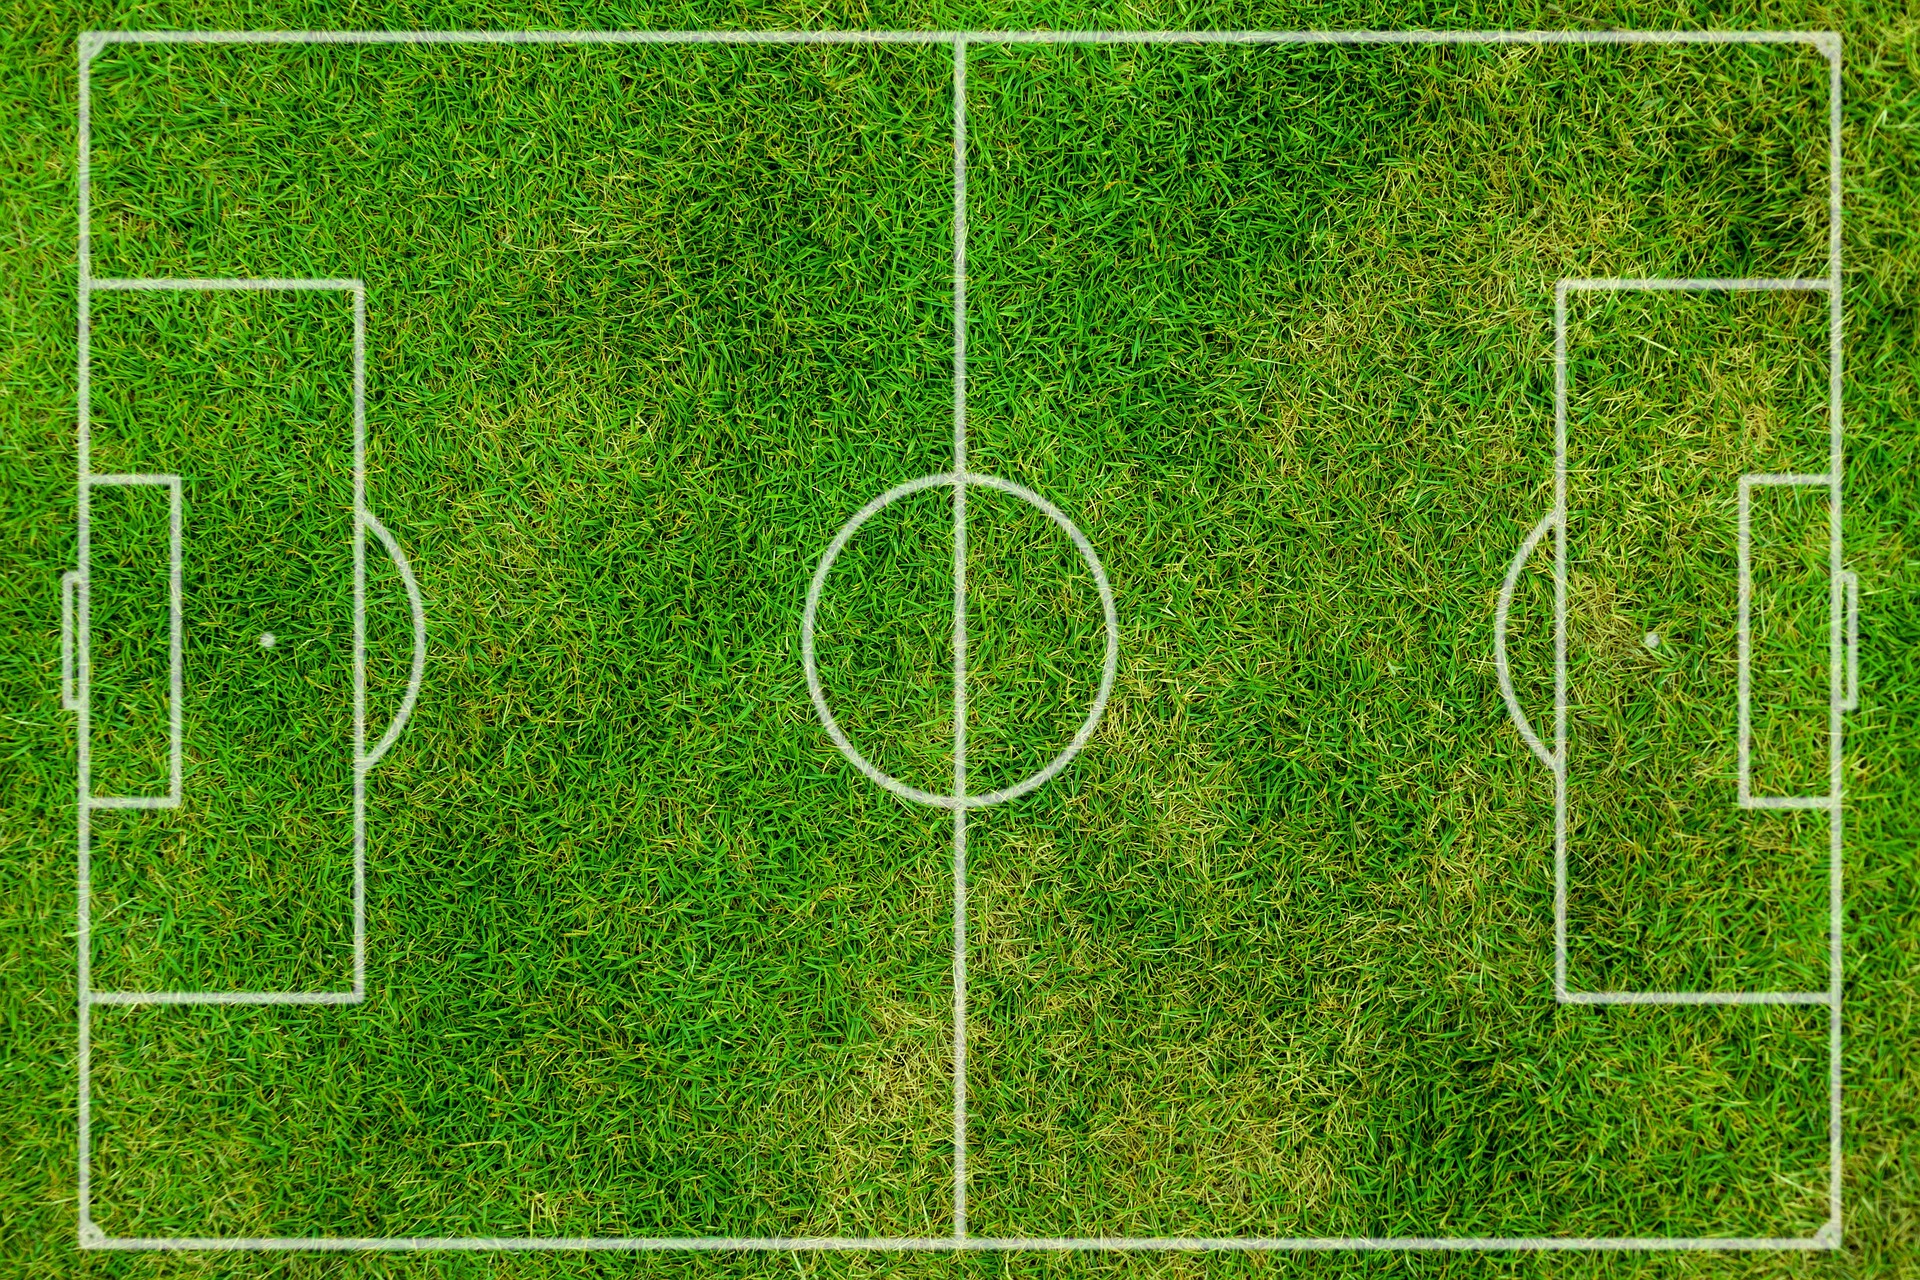 Ukuran Lapangan Sepak Bola dan Jenis Rumput yang Digunakan